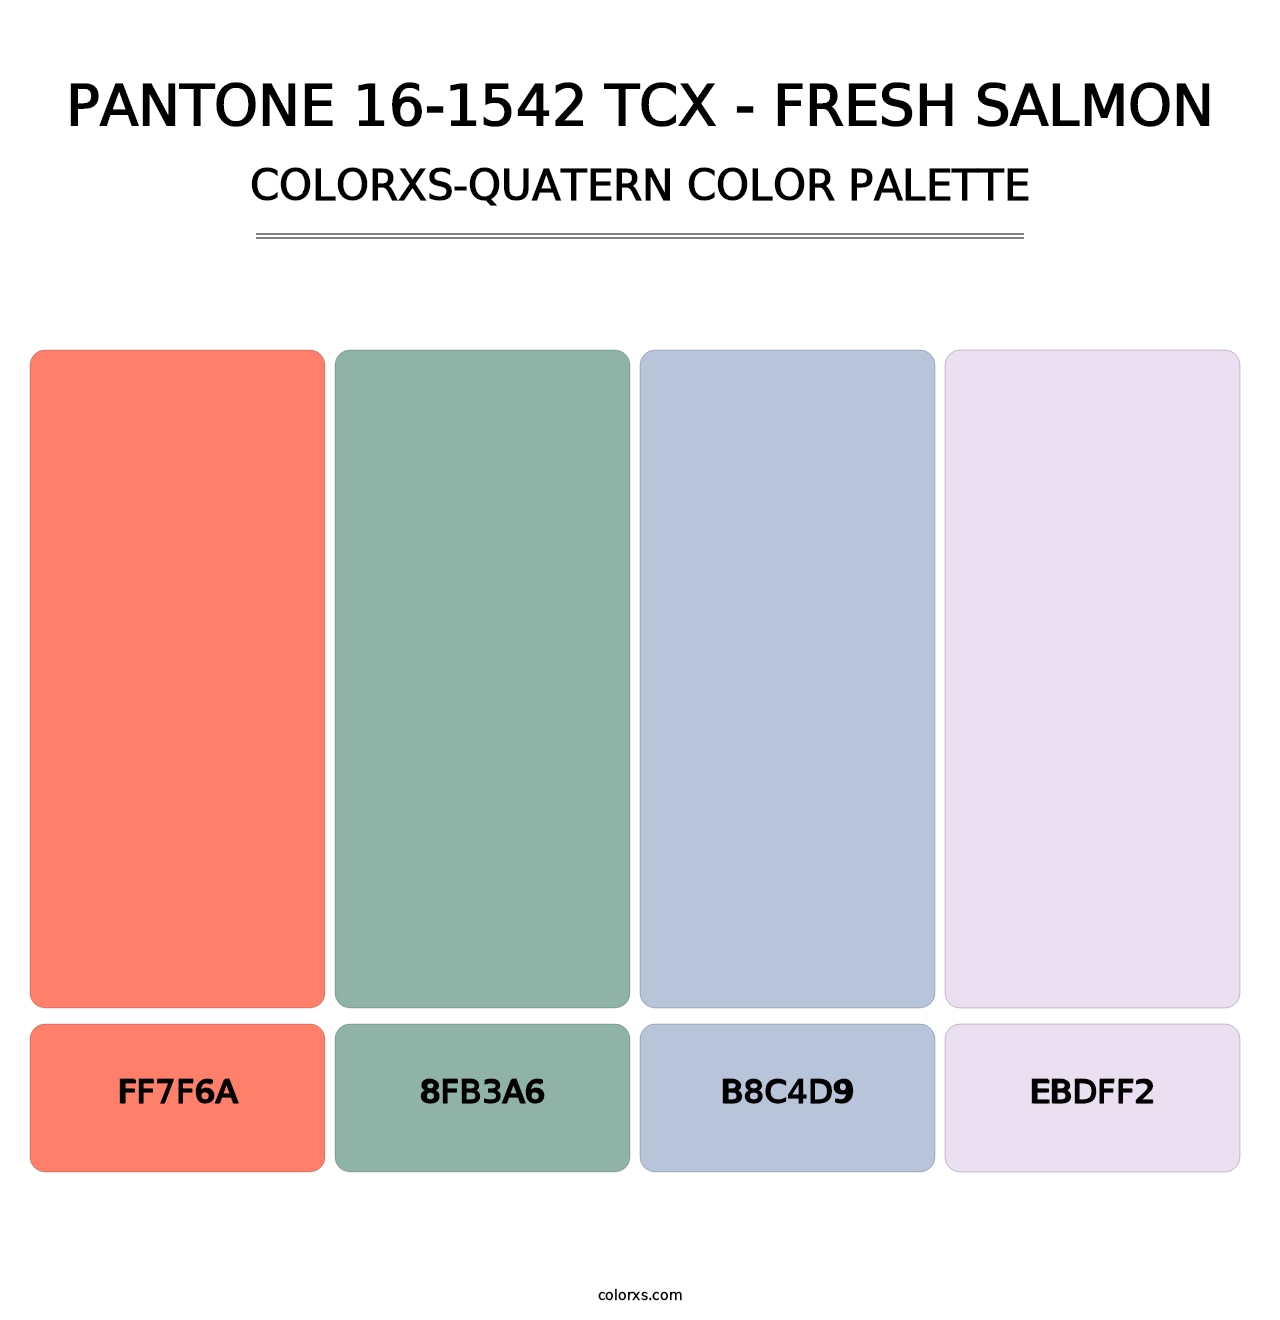 PANTONE 16-1542 TCX - Fresh Salmon - Colorxs Quatern Palette